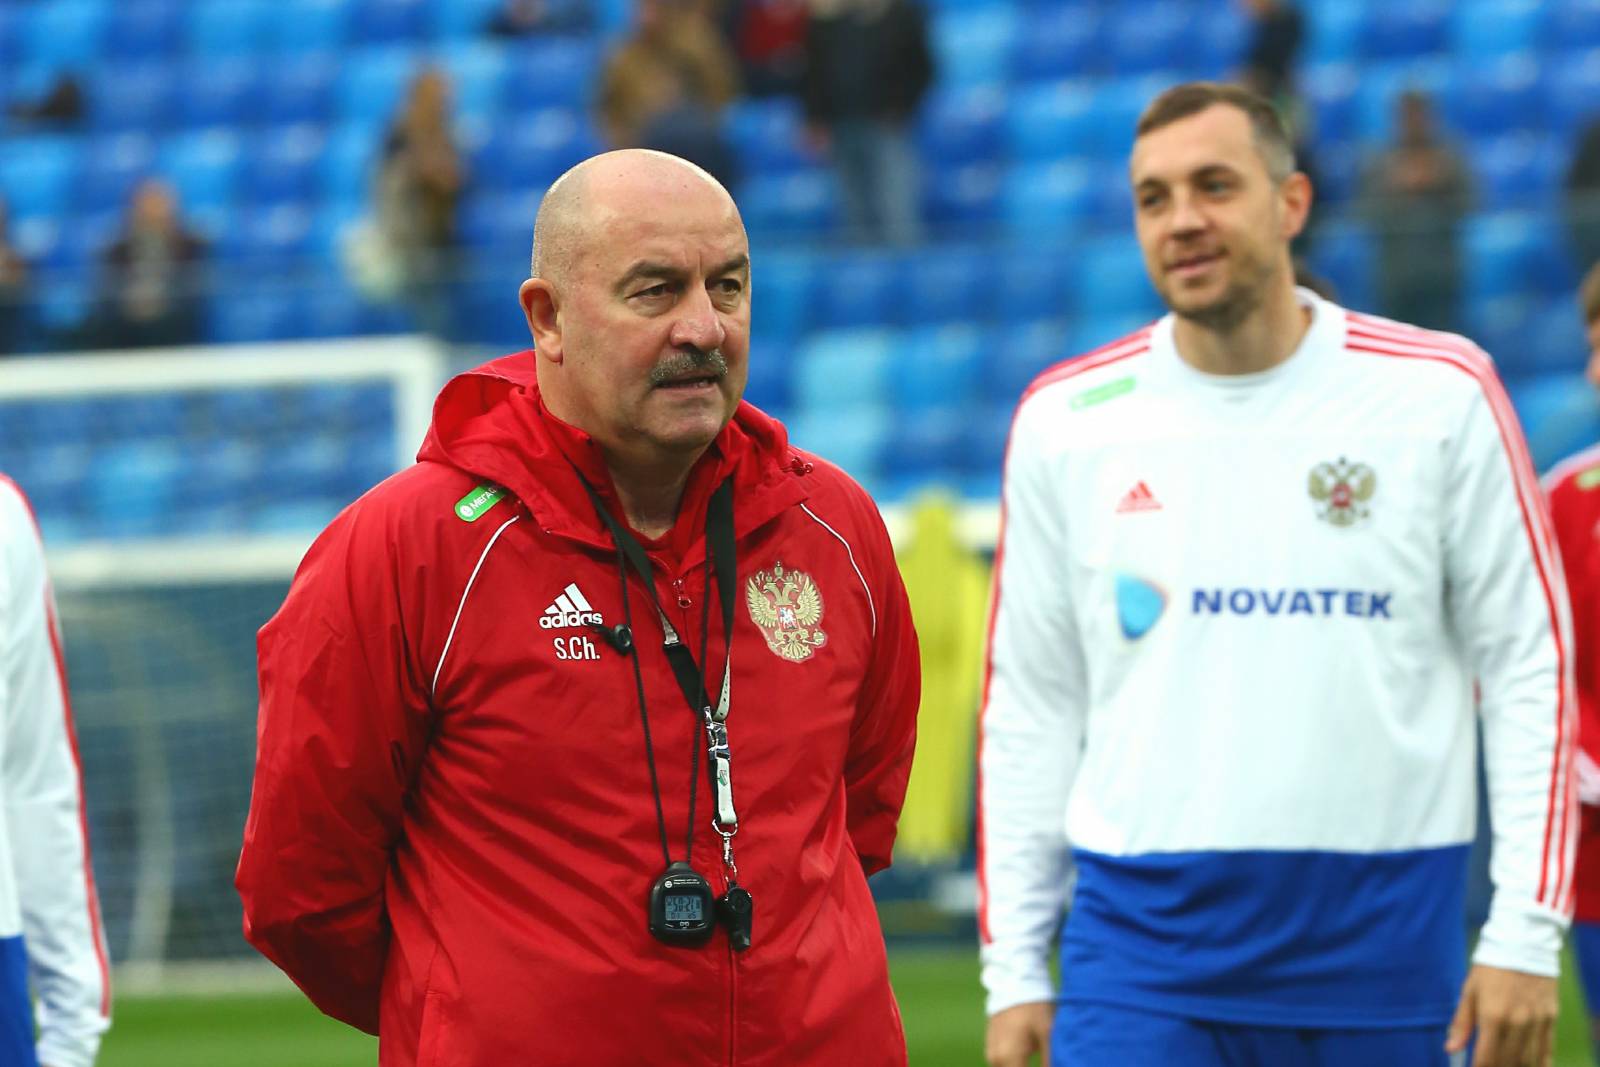 Сафонов, Жирков и Заболотный попали в расширенный состав сборной России на Евро-2020